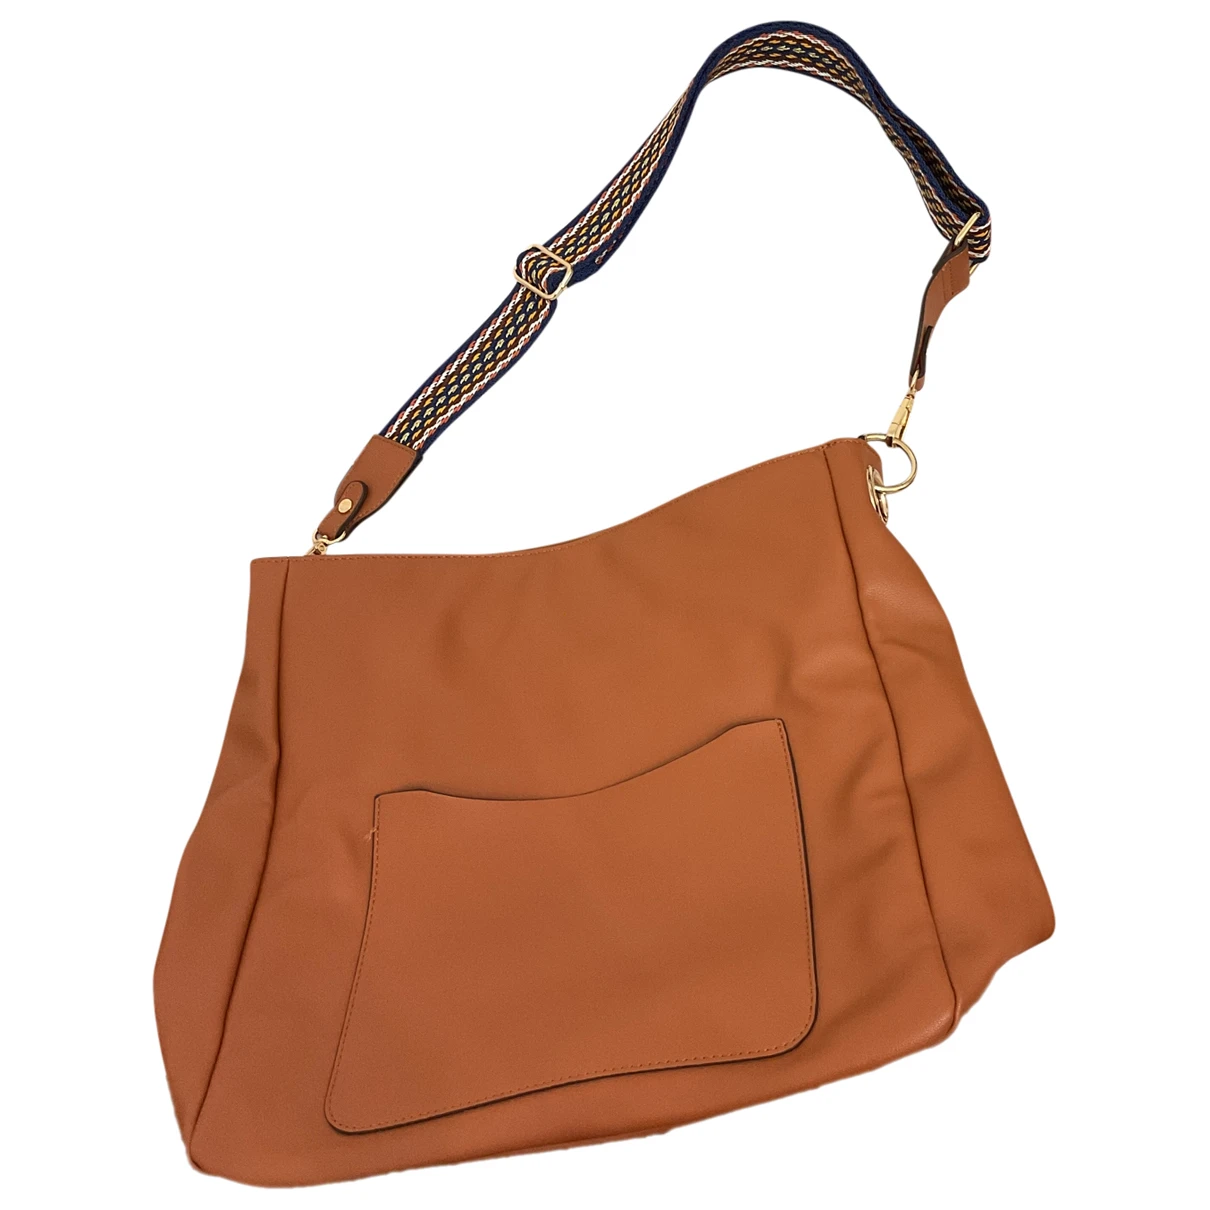 Pre-owned Bocage Leather Handbag In Camel